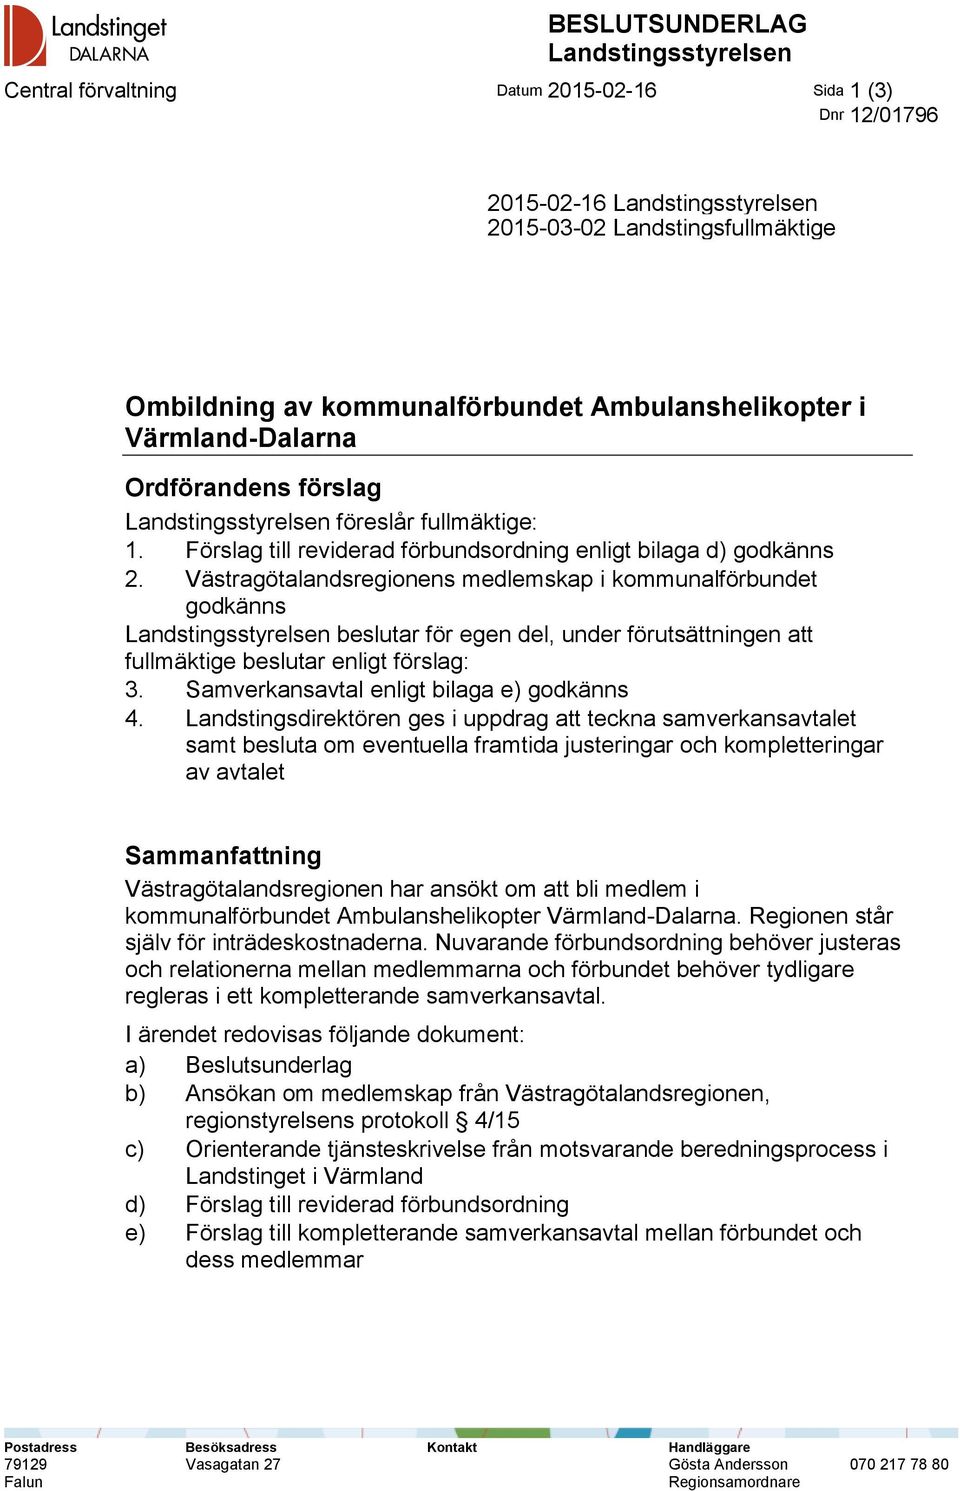 Västragötalandsregionens medlemskap i kommunalförbundet godkänns Landstingsstyrelsen beslutar för egen del, under förutsättningen att fullmäktige beslutar enligt förslag: 3.